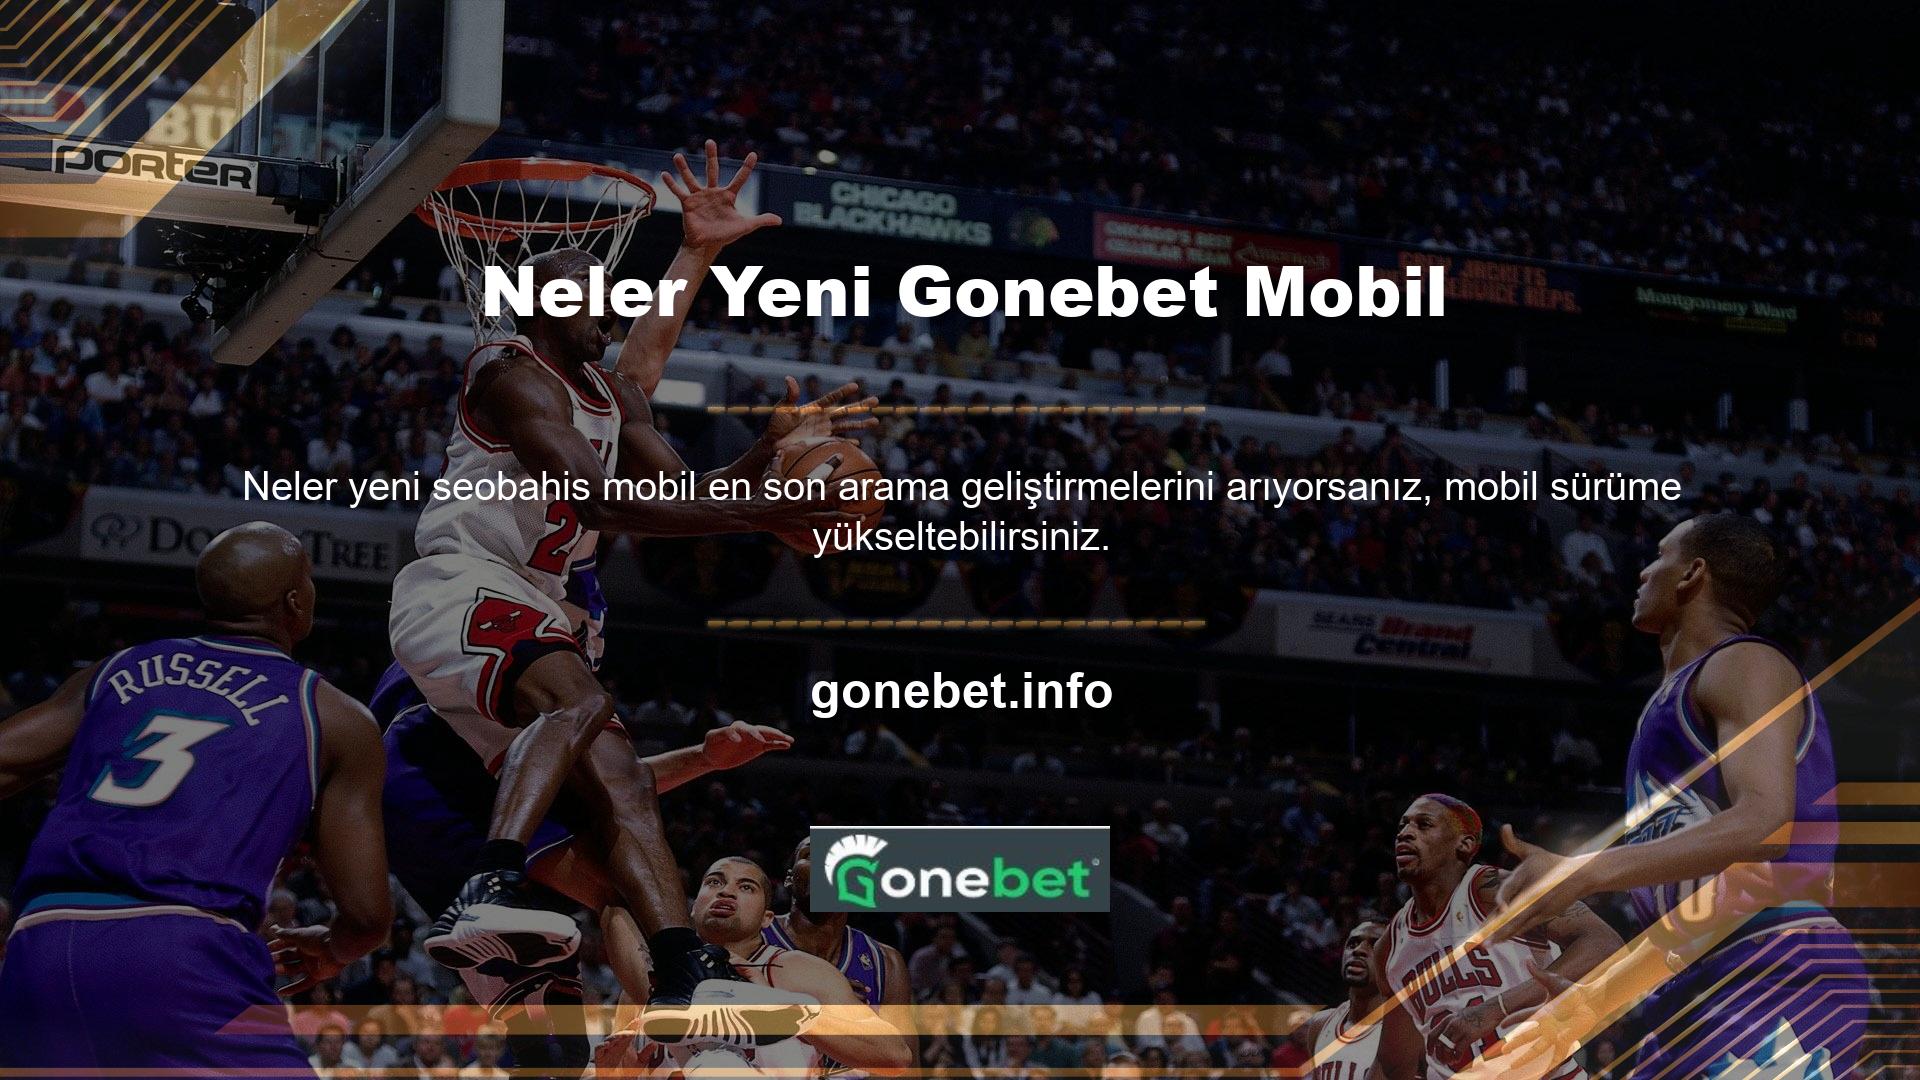 Gonebet, mobil ana sayfasında hem bahis hem de bahis bölümleri sunmaktadır